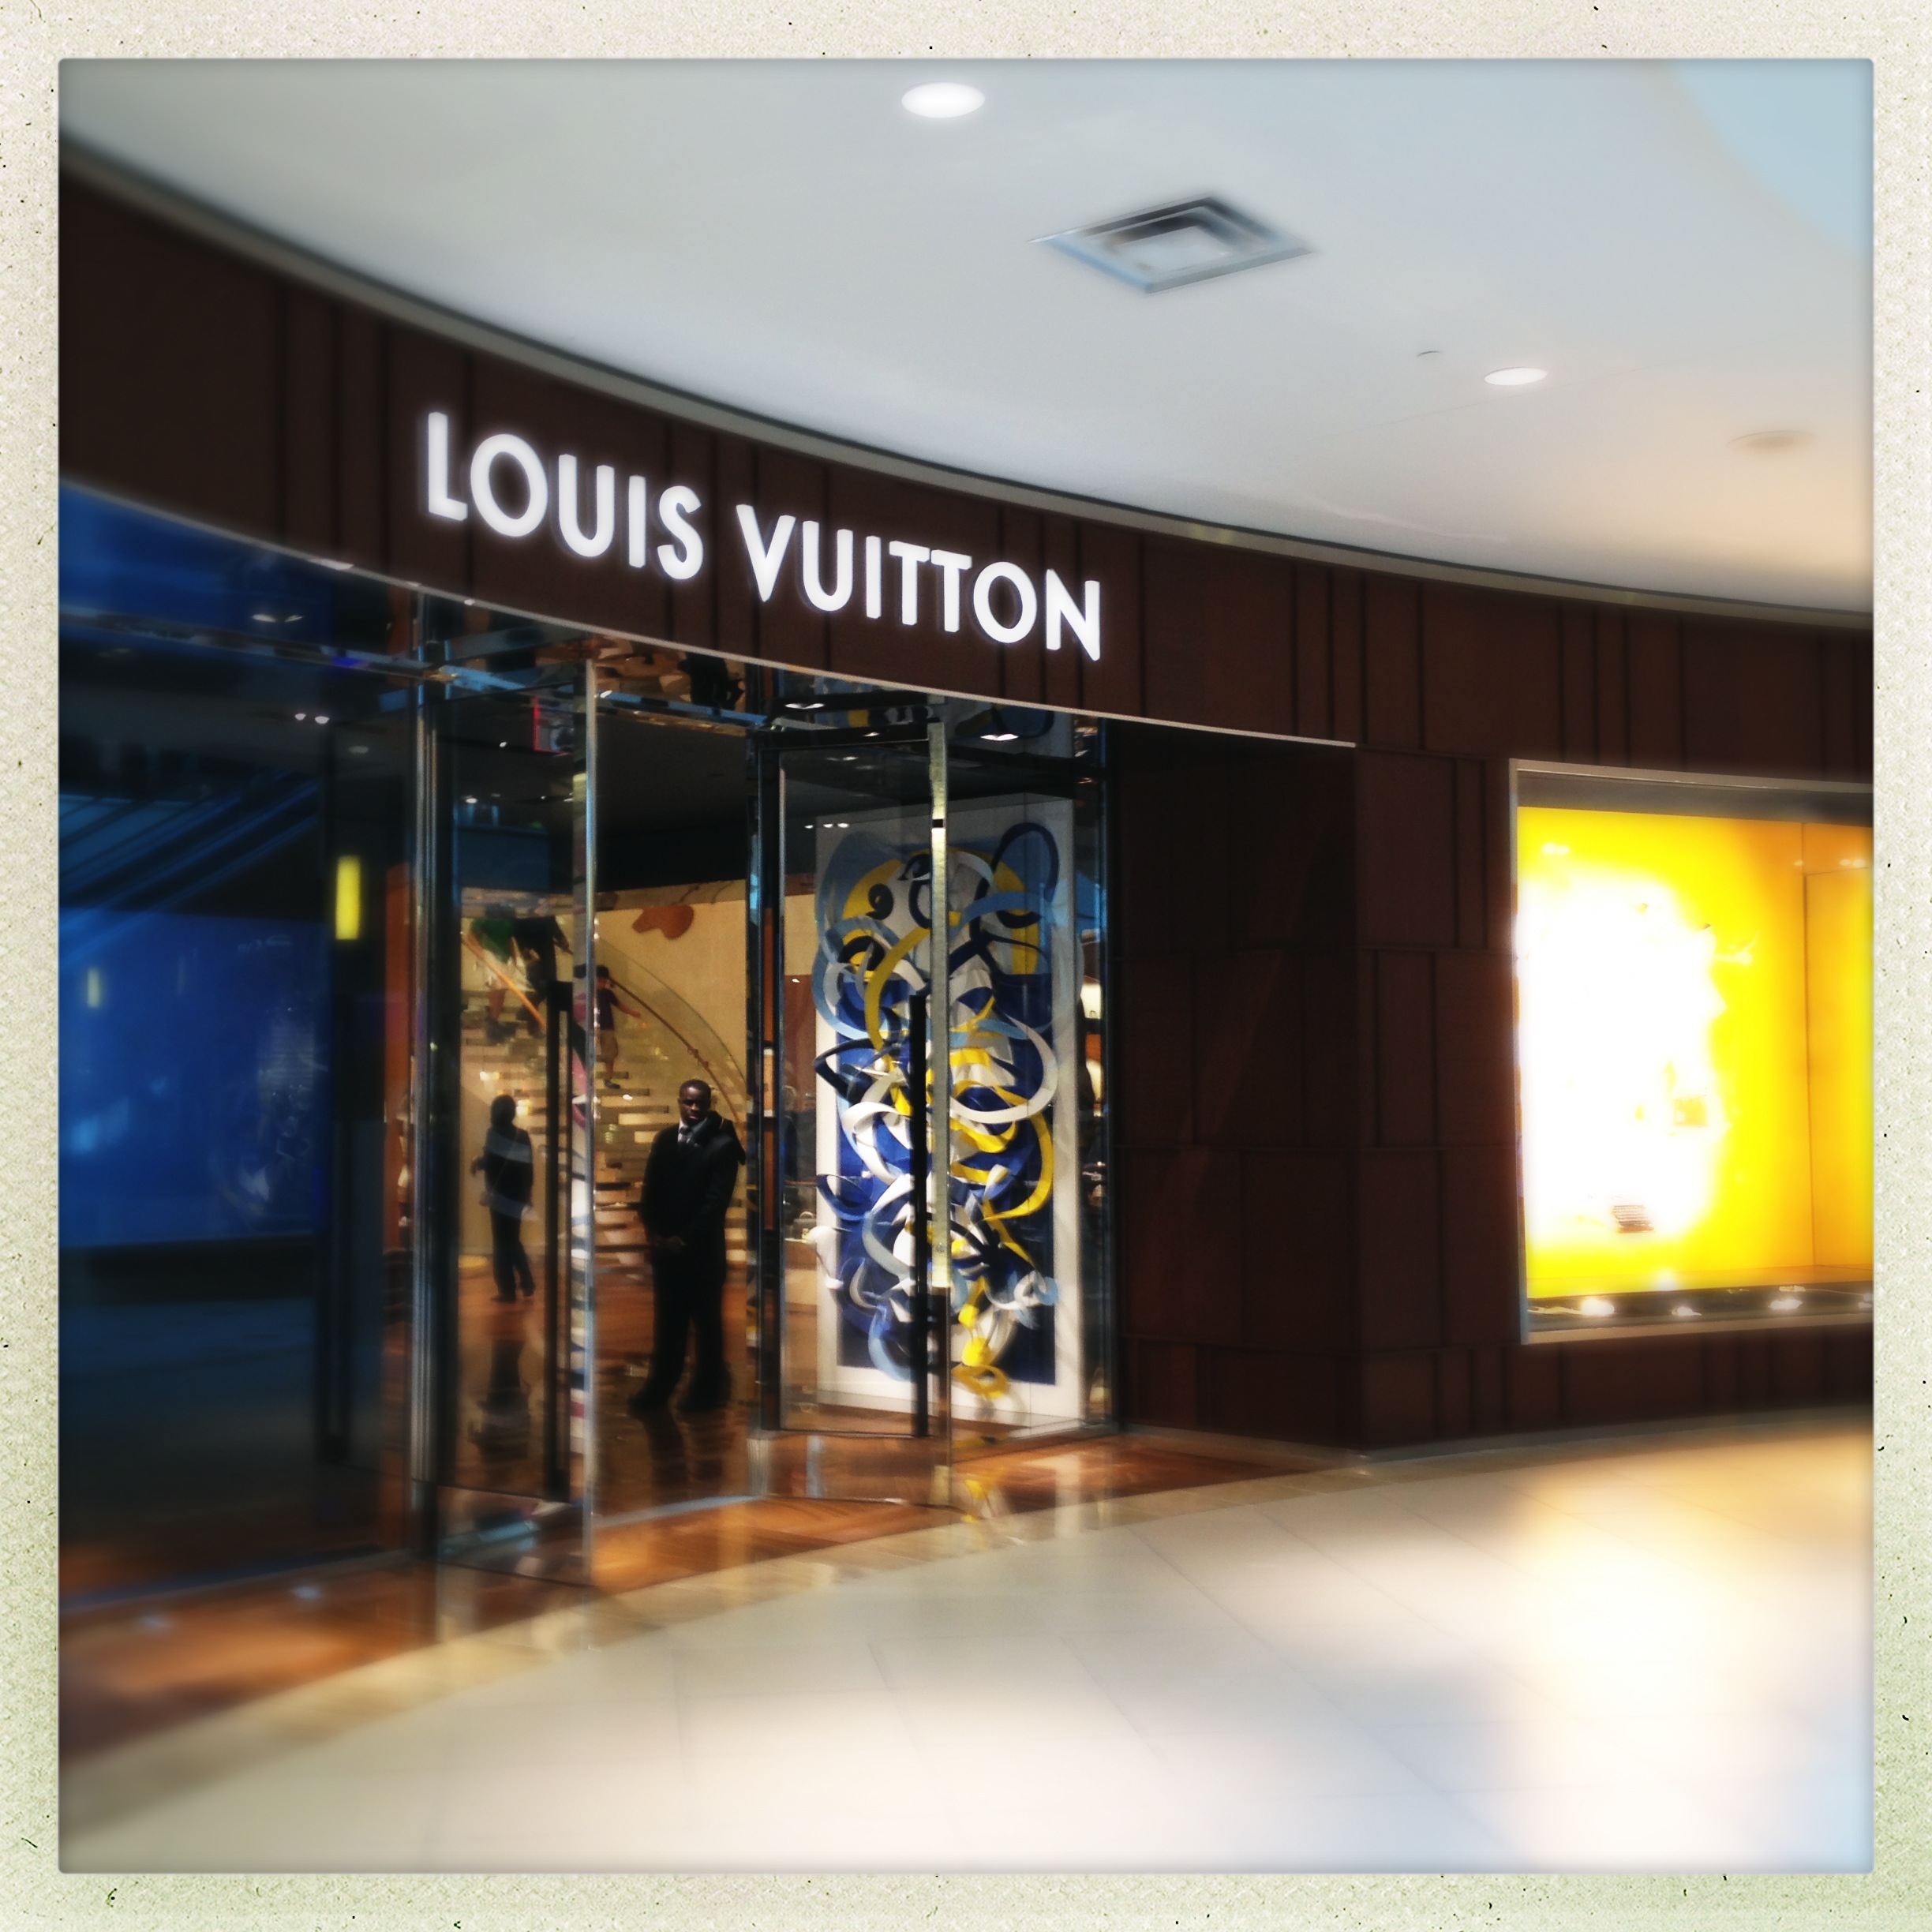 Compras em Miami - Louis Vuitton - Lojas em Miami